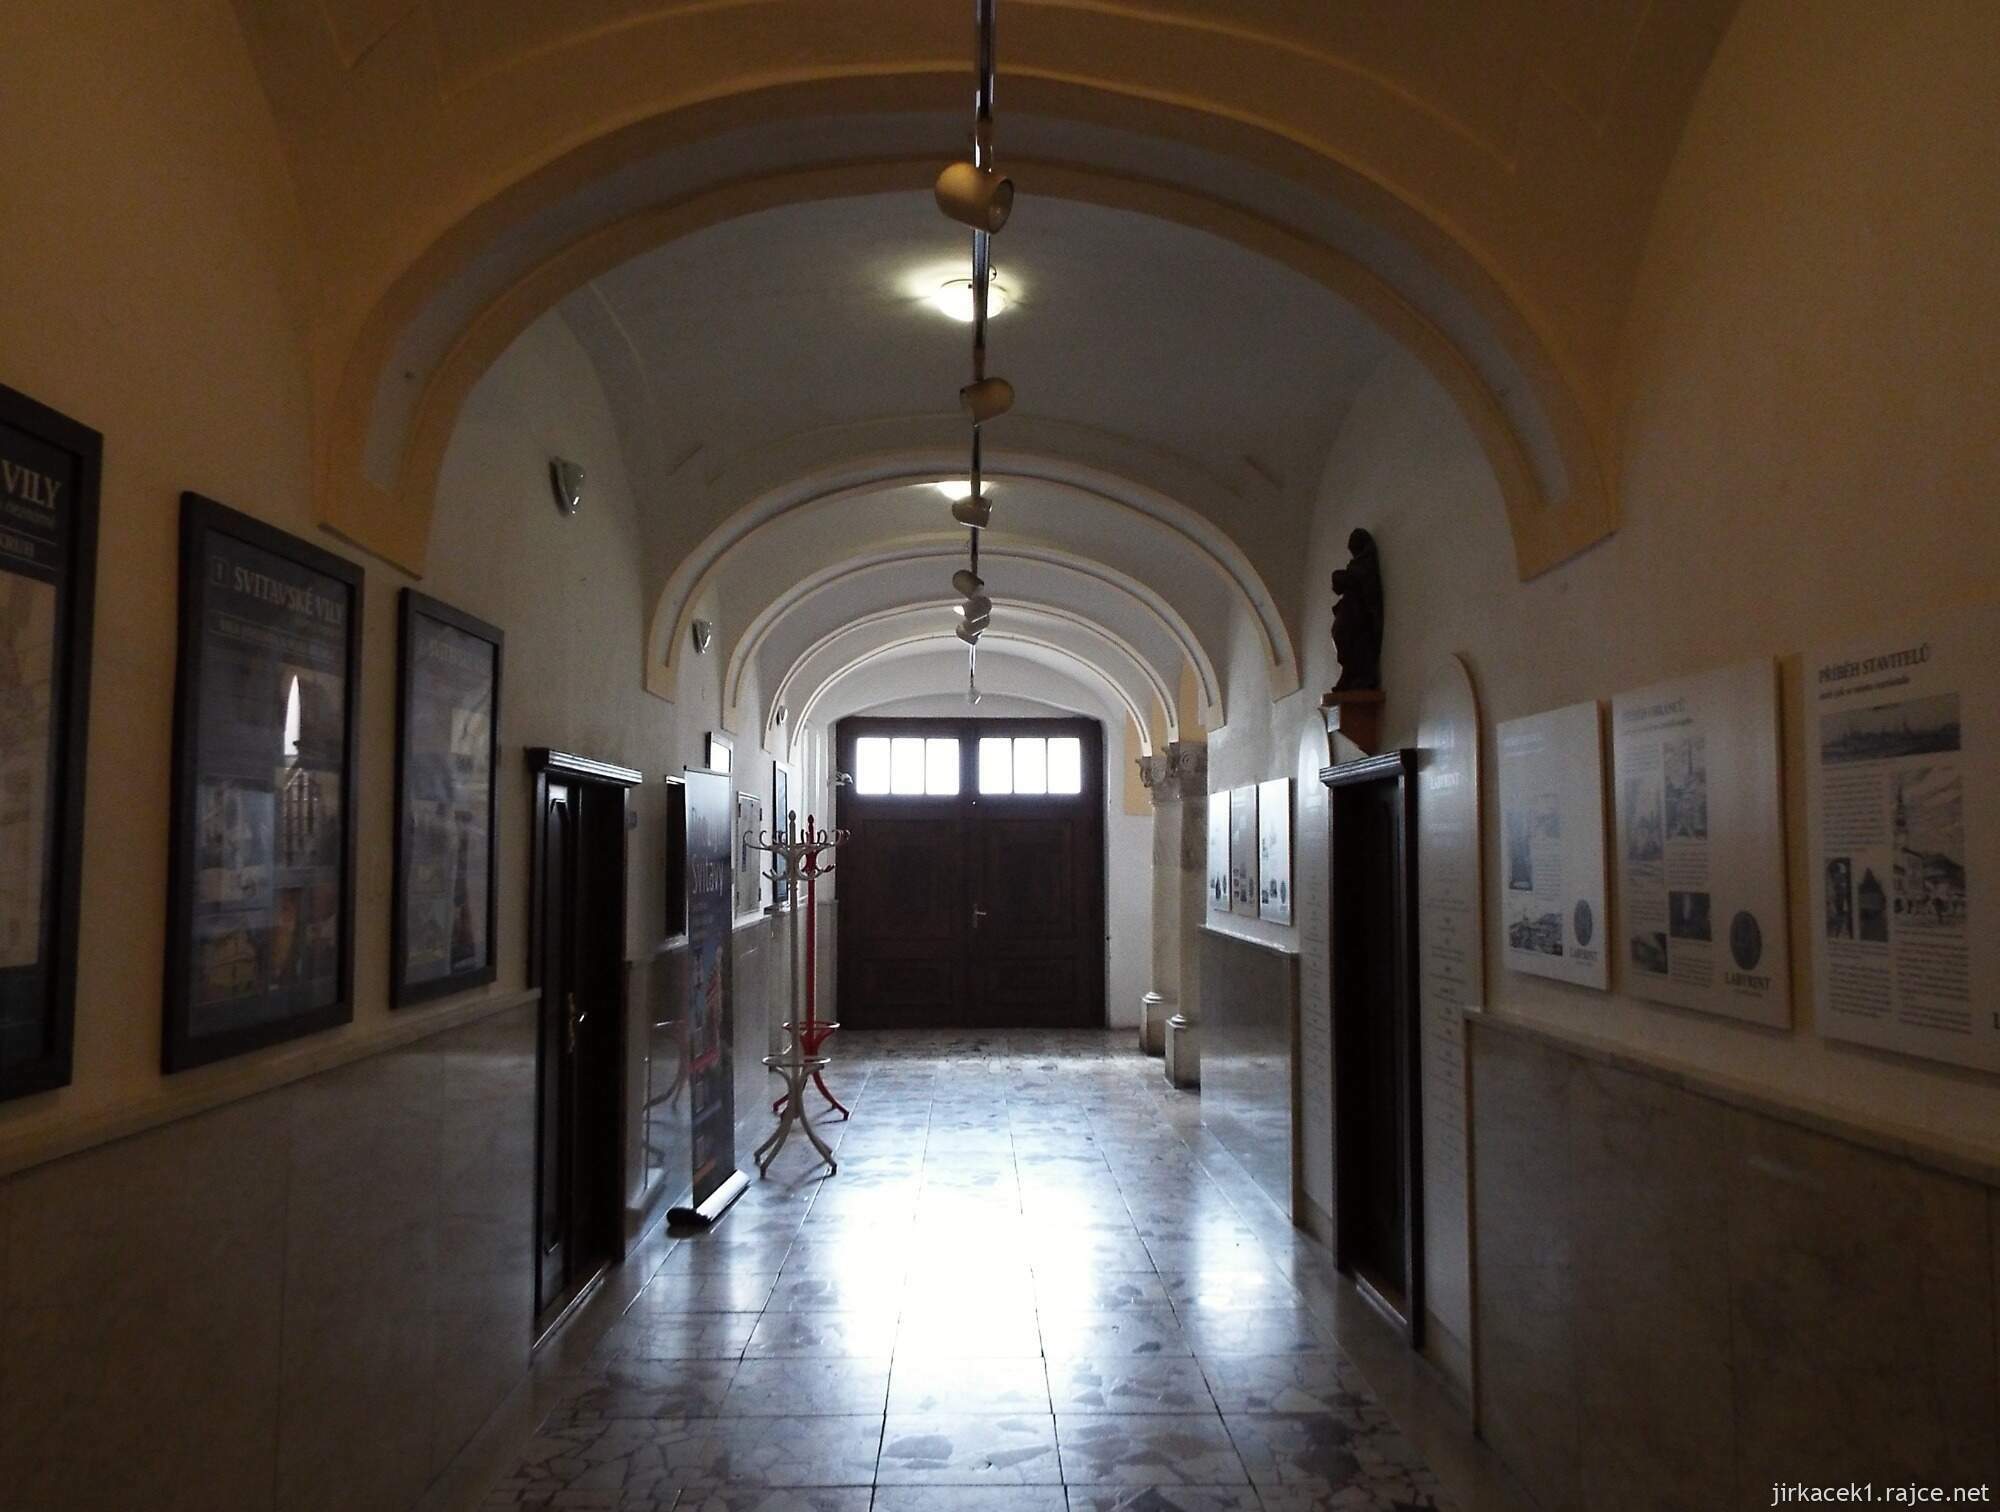 42 - Svitavy - městské muzeum 03 - vstupní chodba s expozicí Labyrint svitavských příběhů